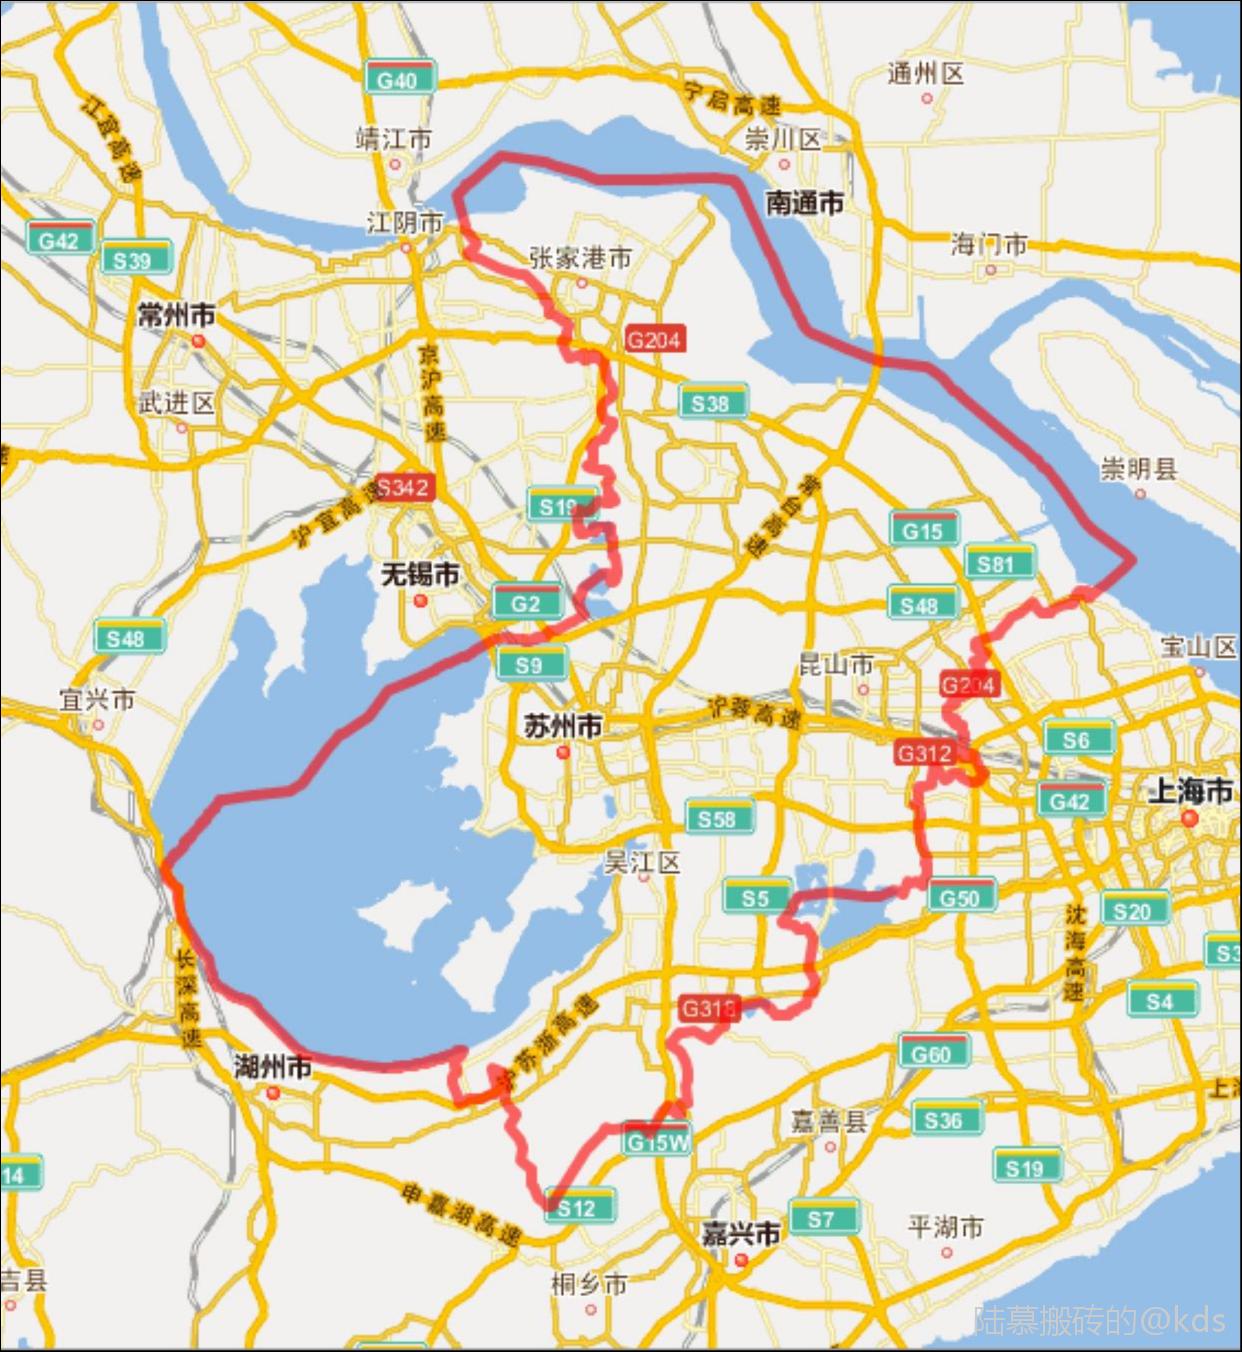 苏州面积比上海大几倍,人数比上海少几倍,然后不用说了吧